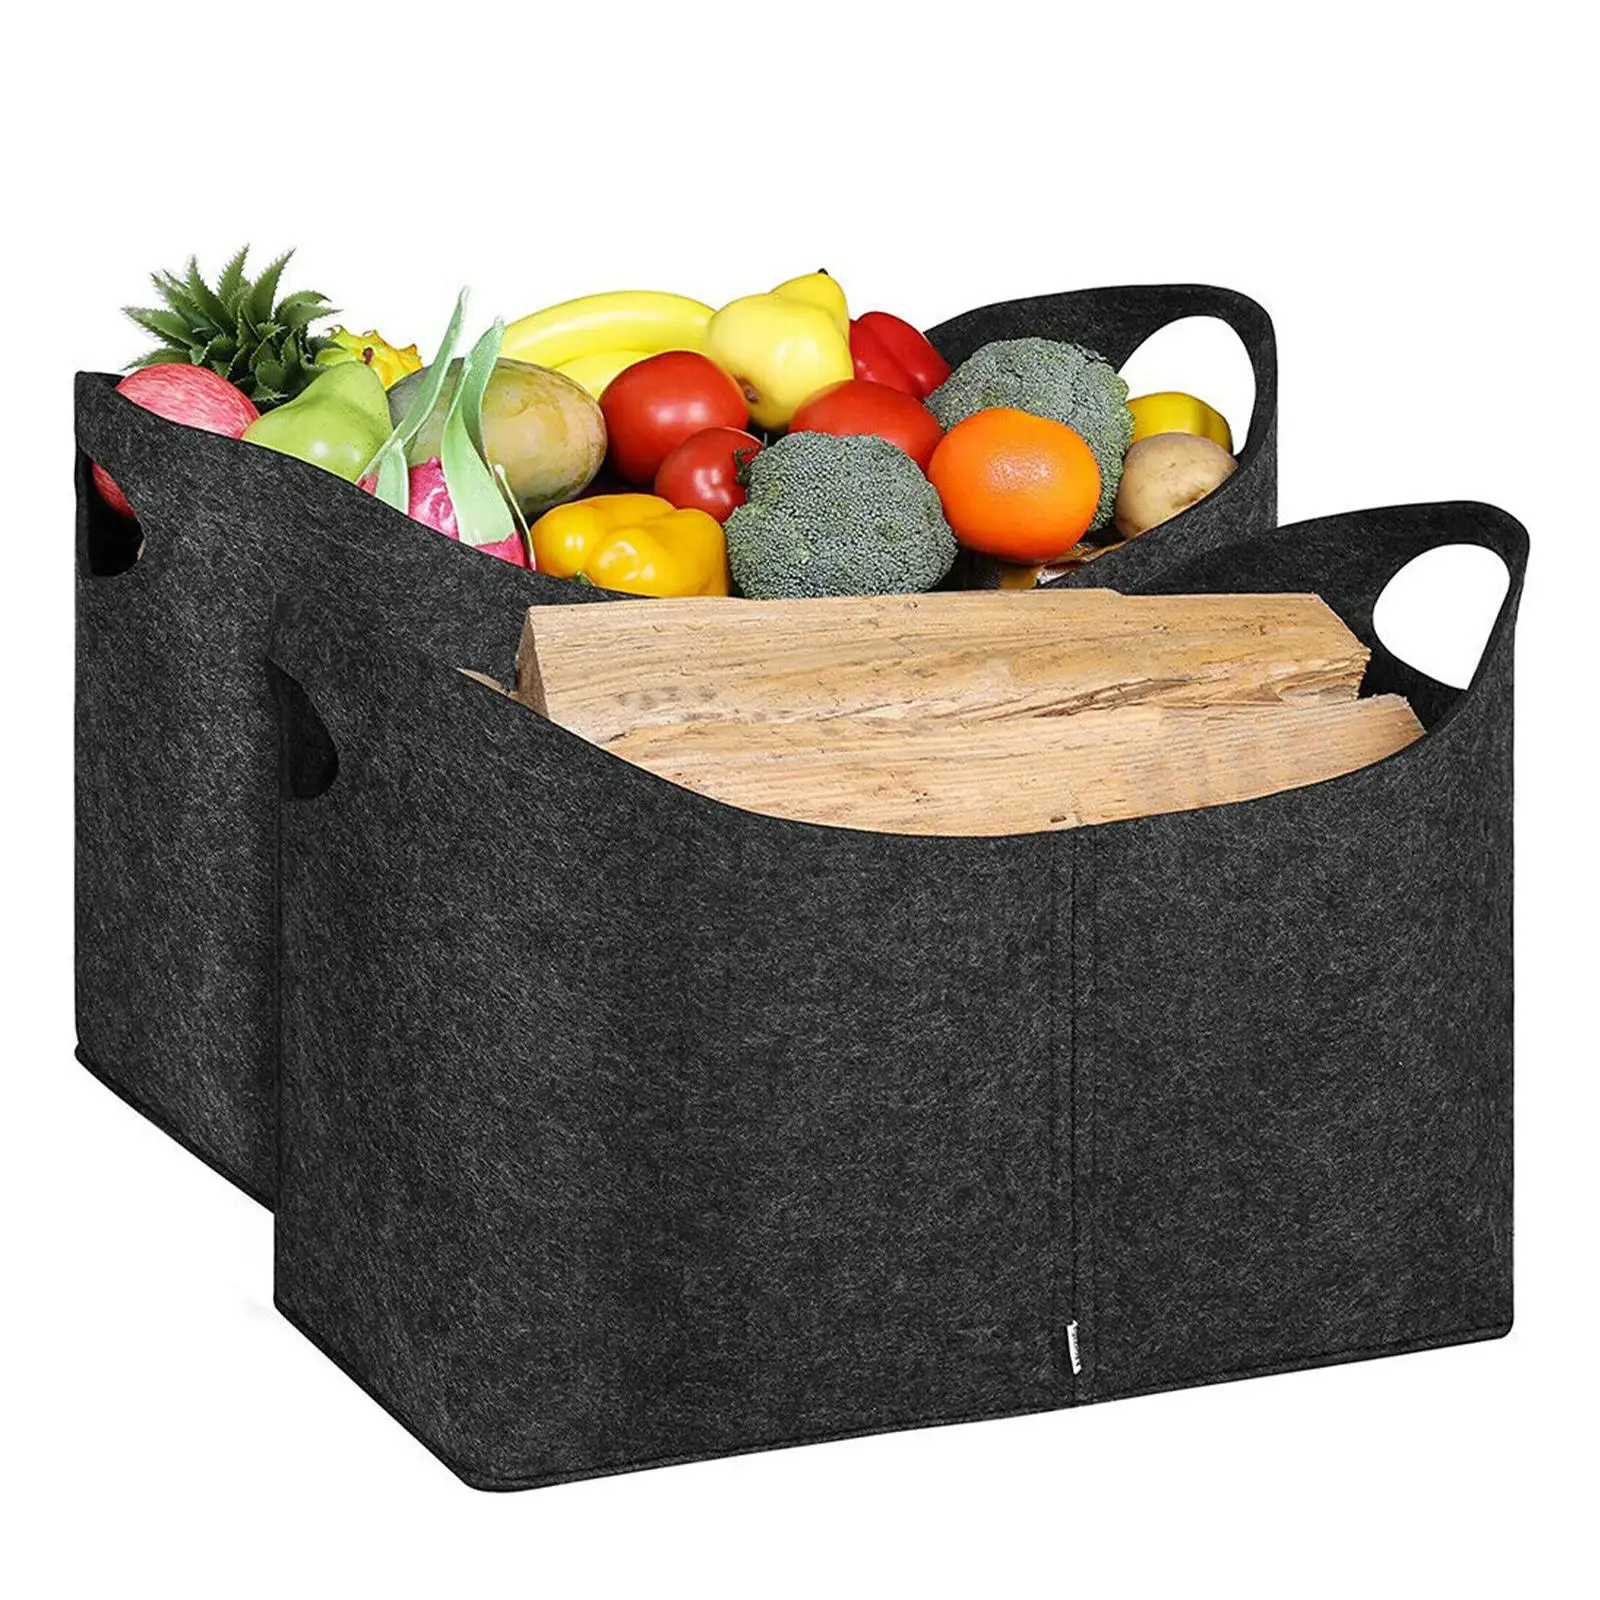 1pc Felt Storage Bag Fireplace Wood Bags Fruit Vegetable Storage Basket Rack Firewood Pocket Bag Home Storage Bags Holder